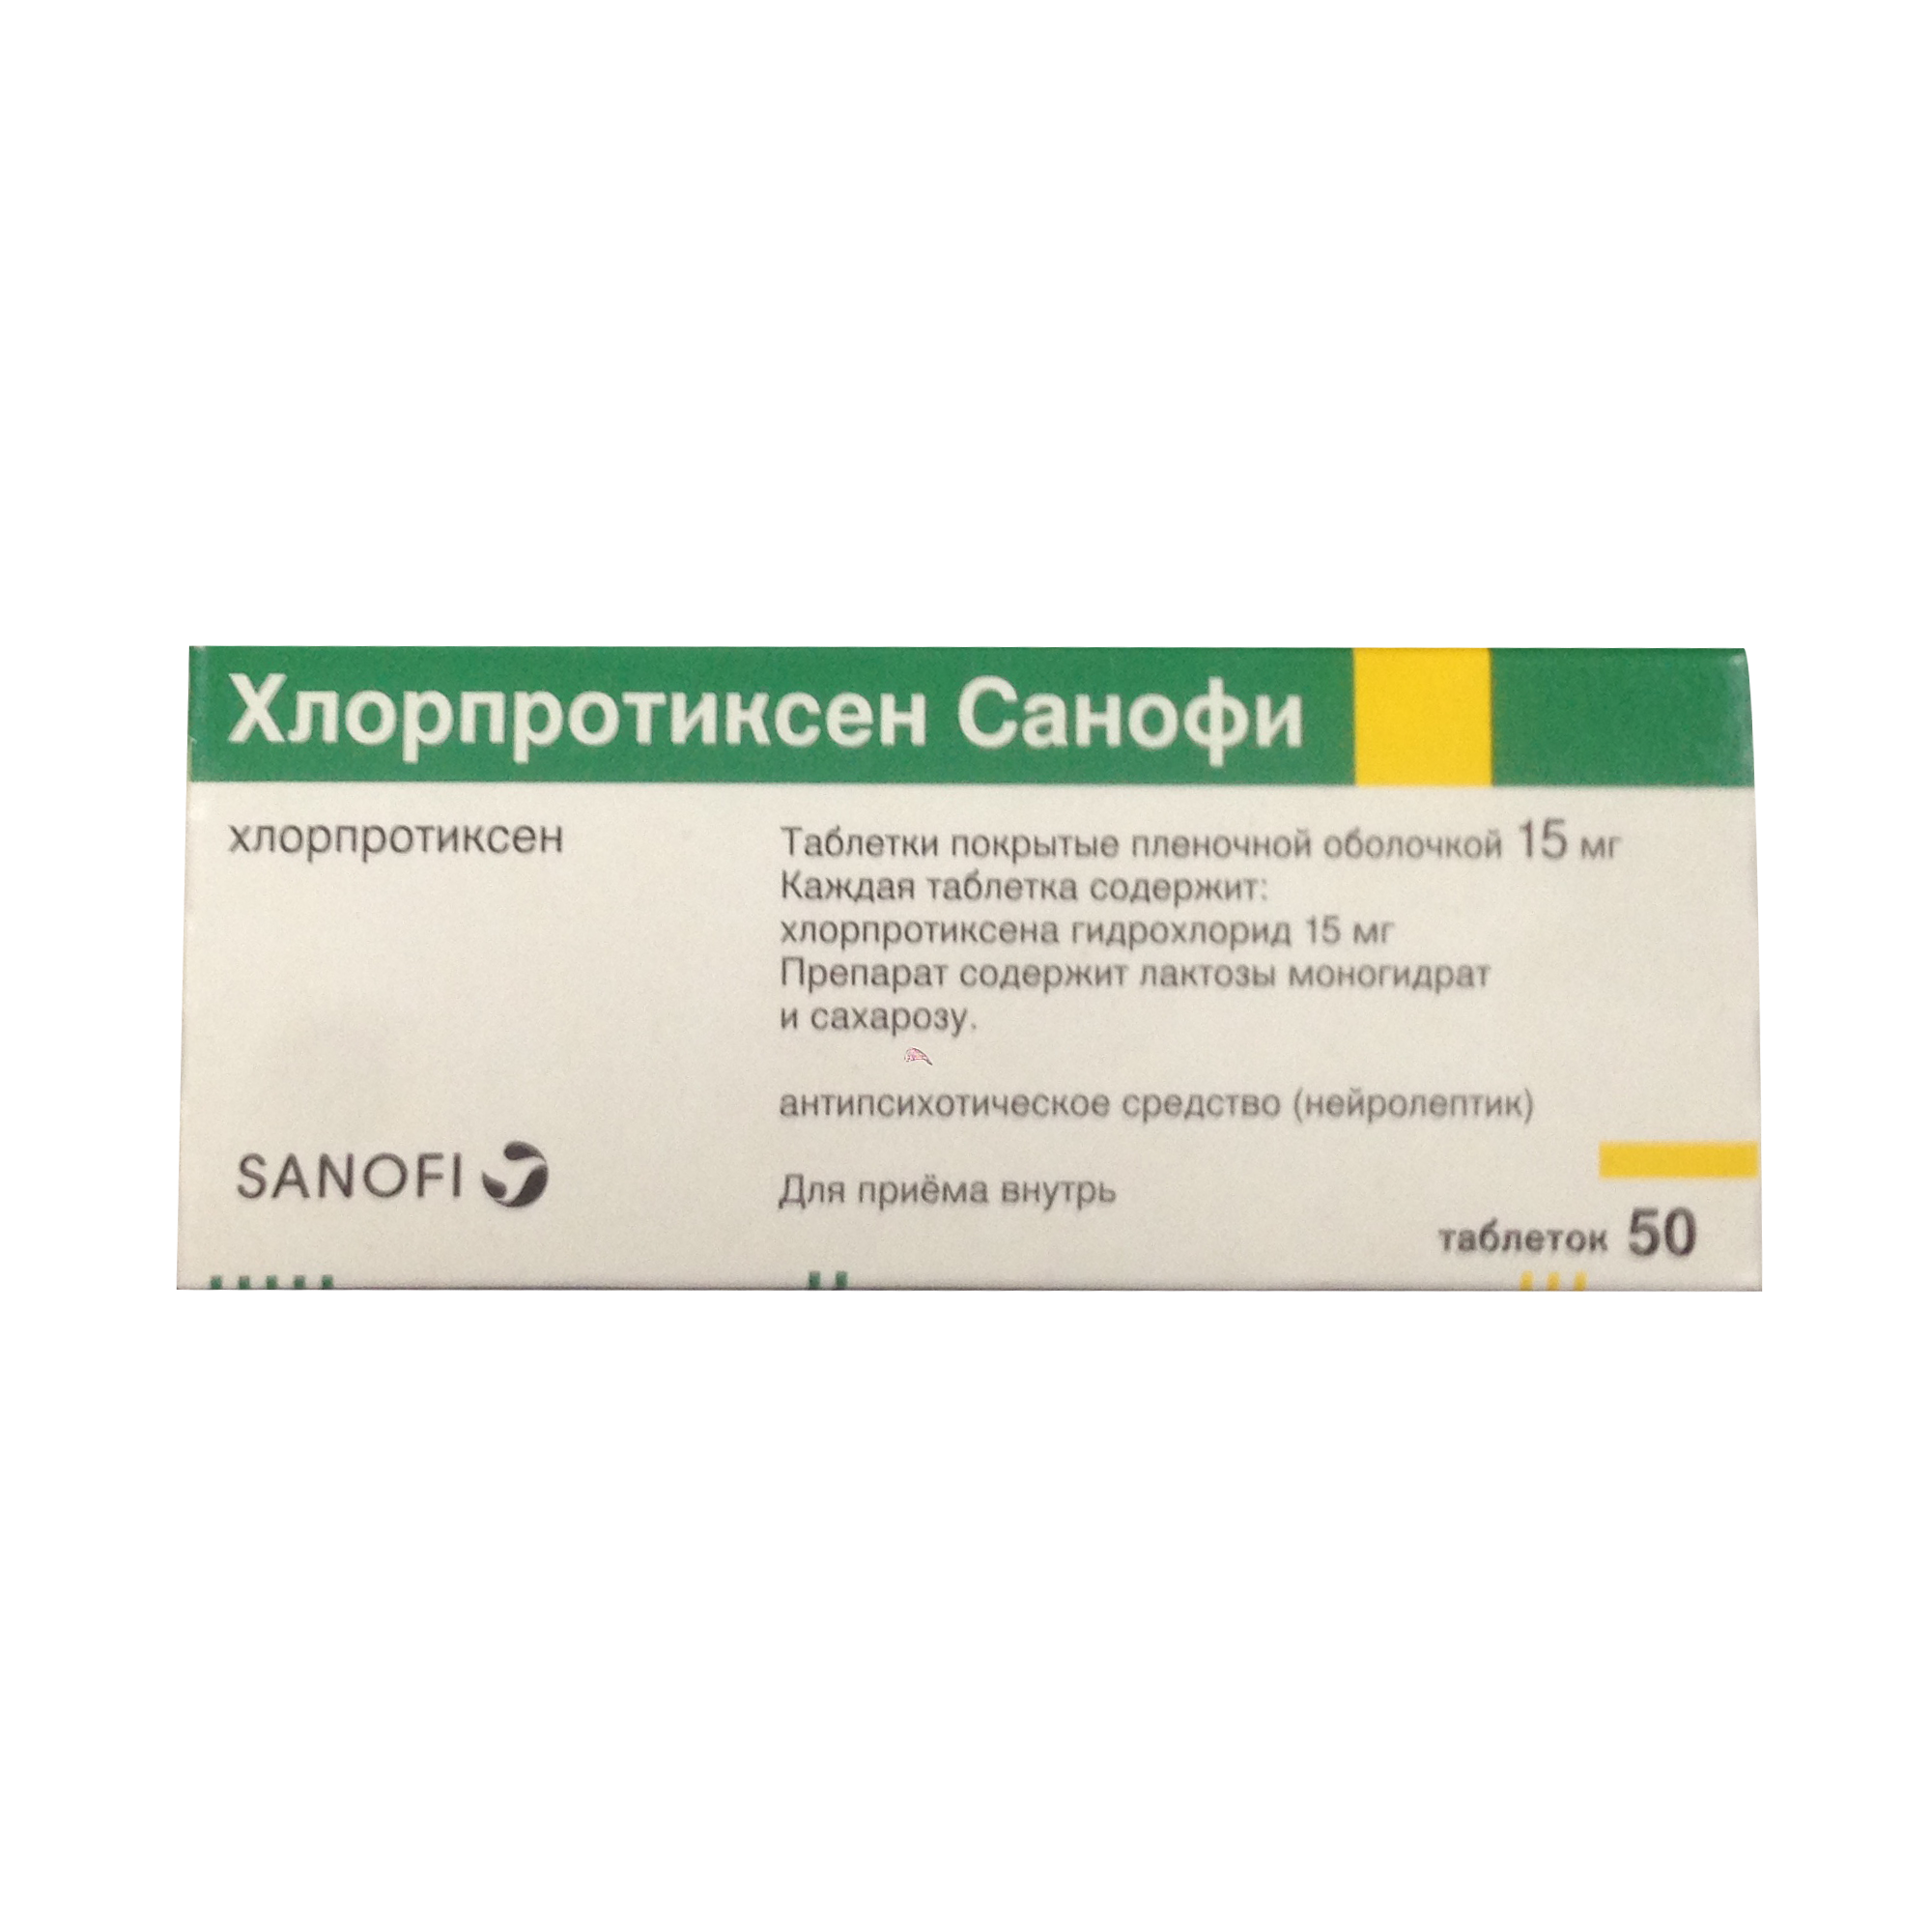 Хлорпротиксен (chlorprothixen). отзывы пациентов принимавших препарат, инструкция, польза, вред, показания